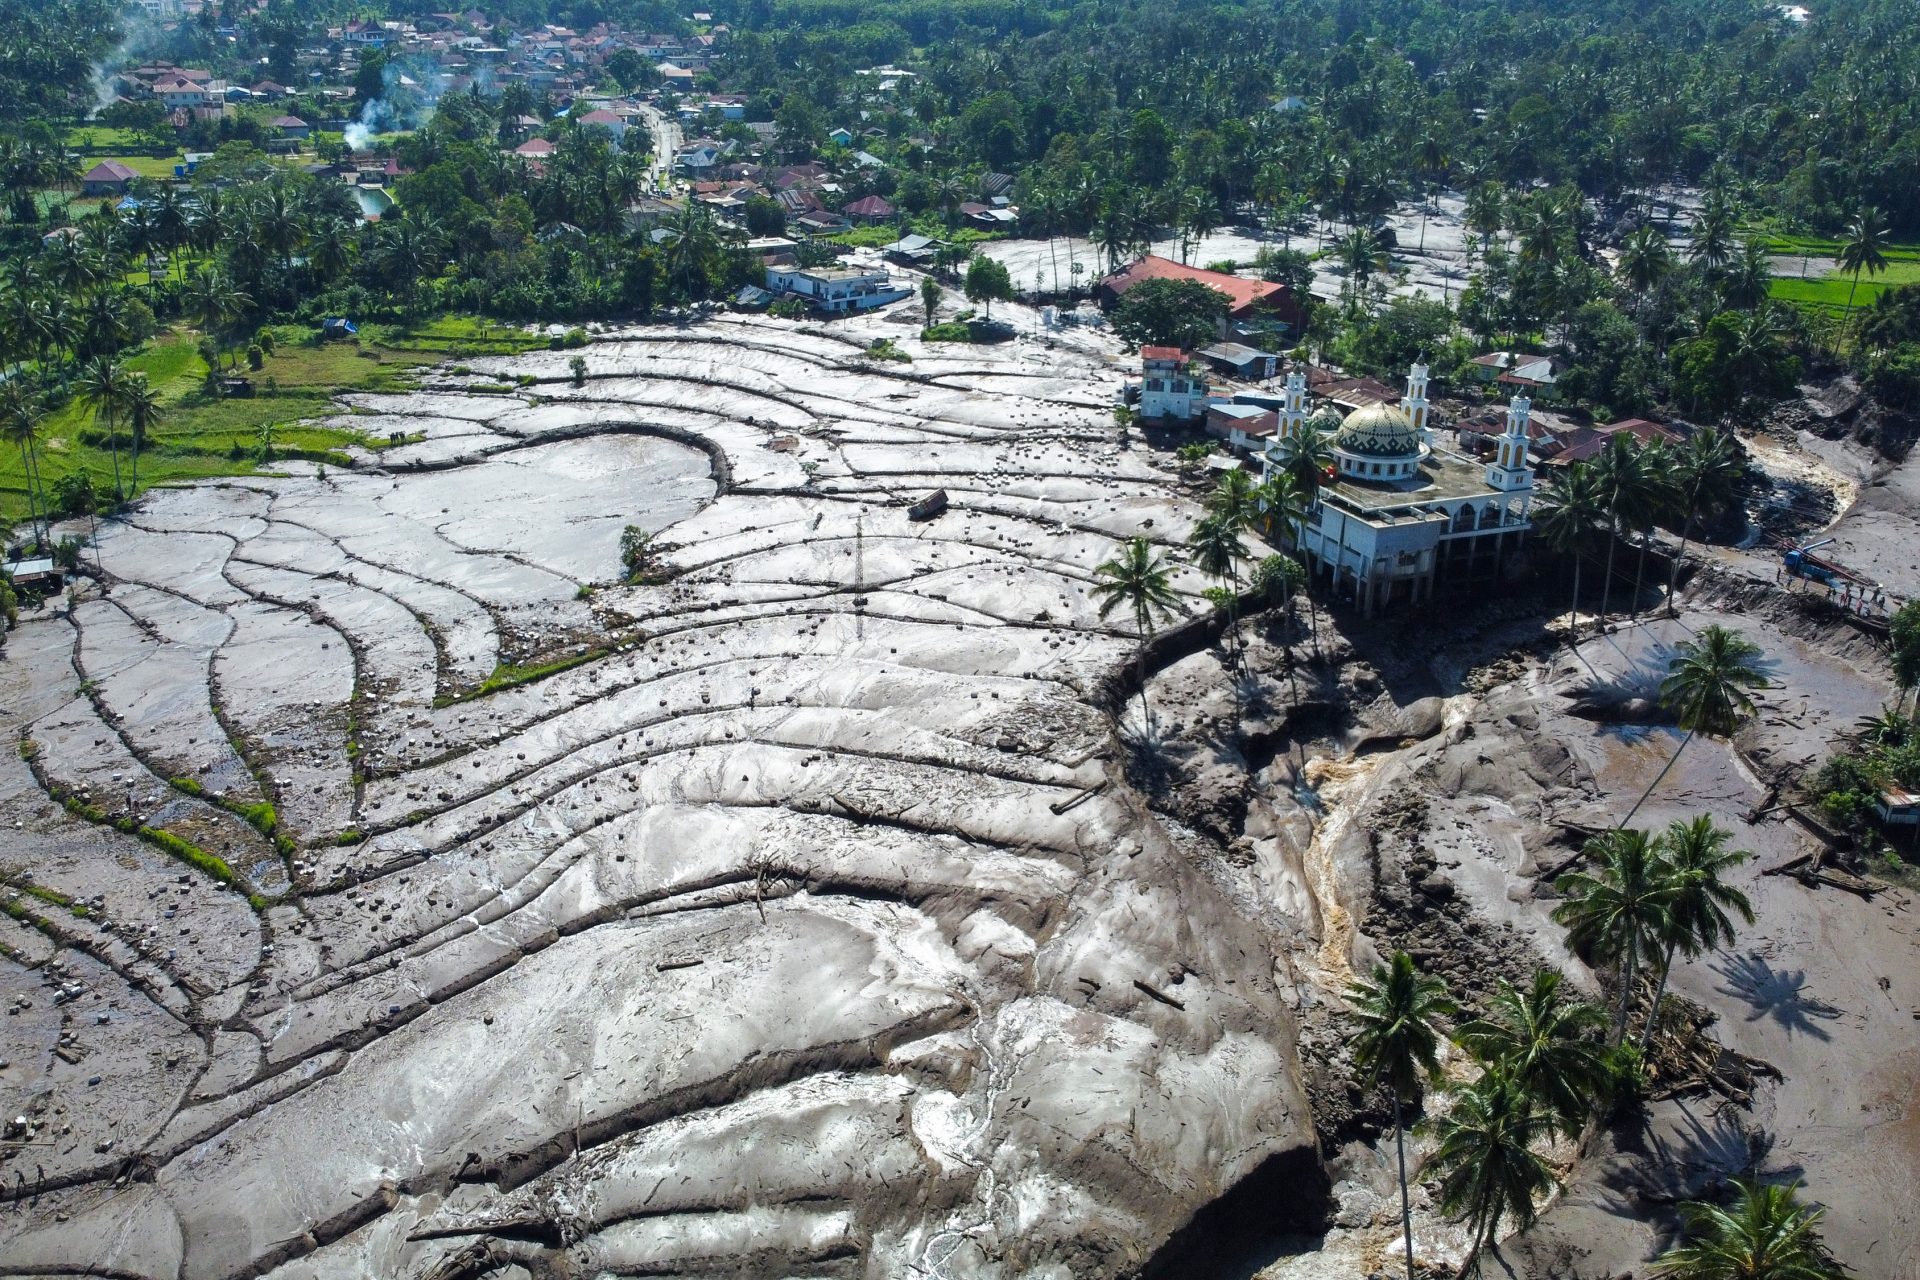 Impressionantes imagens da lava fria e inundações que devastam ilha indonésia